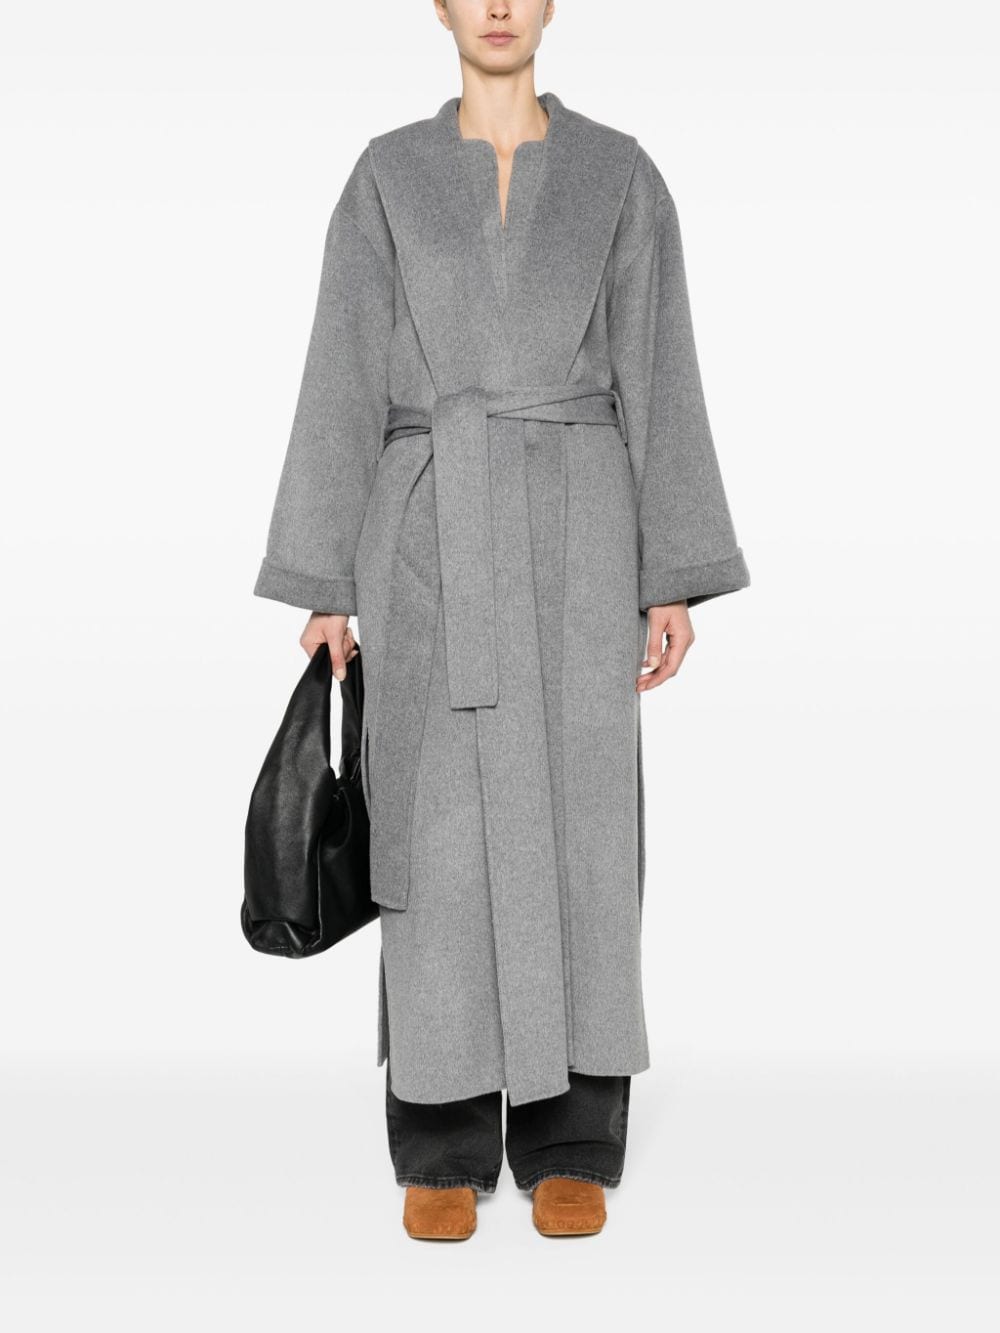 TRULLEM coat, grey